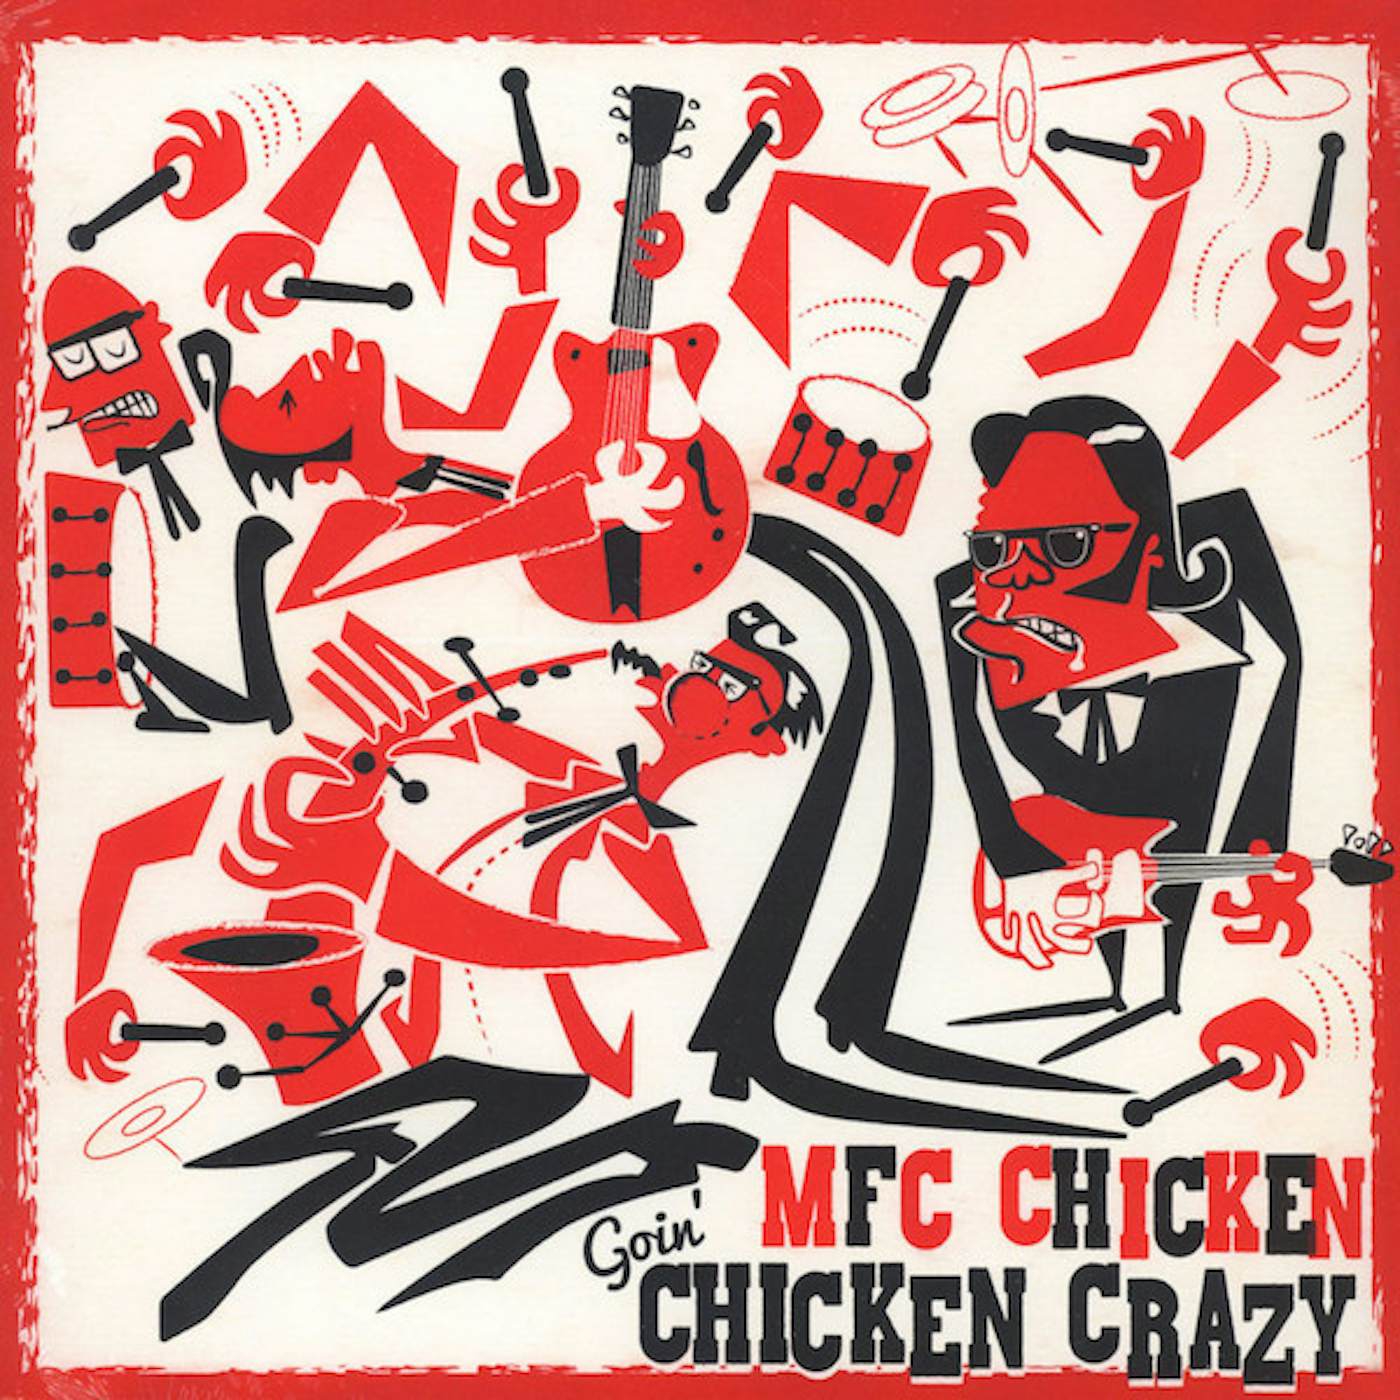 MFC Chicken Goin' Chicken Crazy Vinyl Record